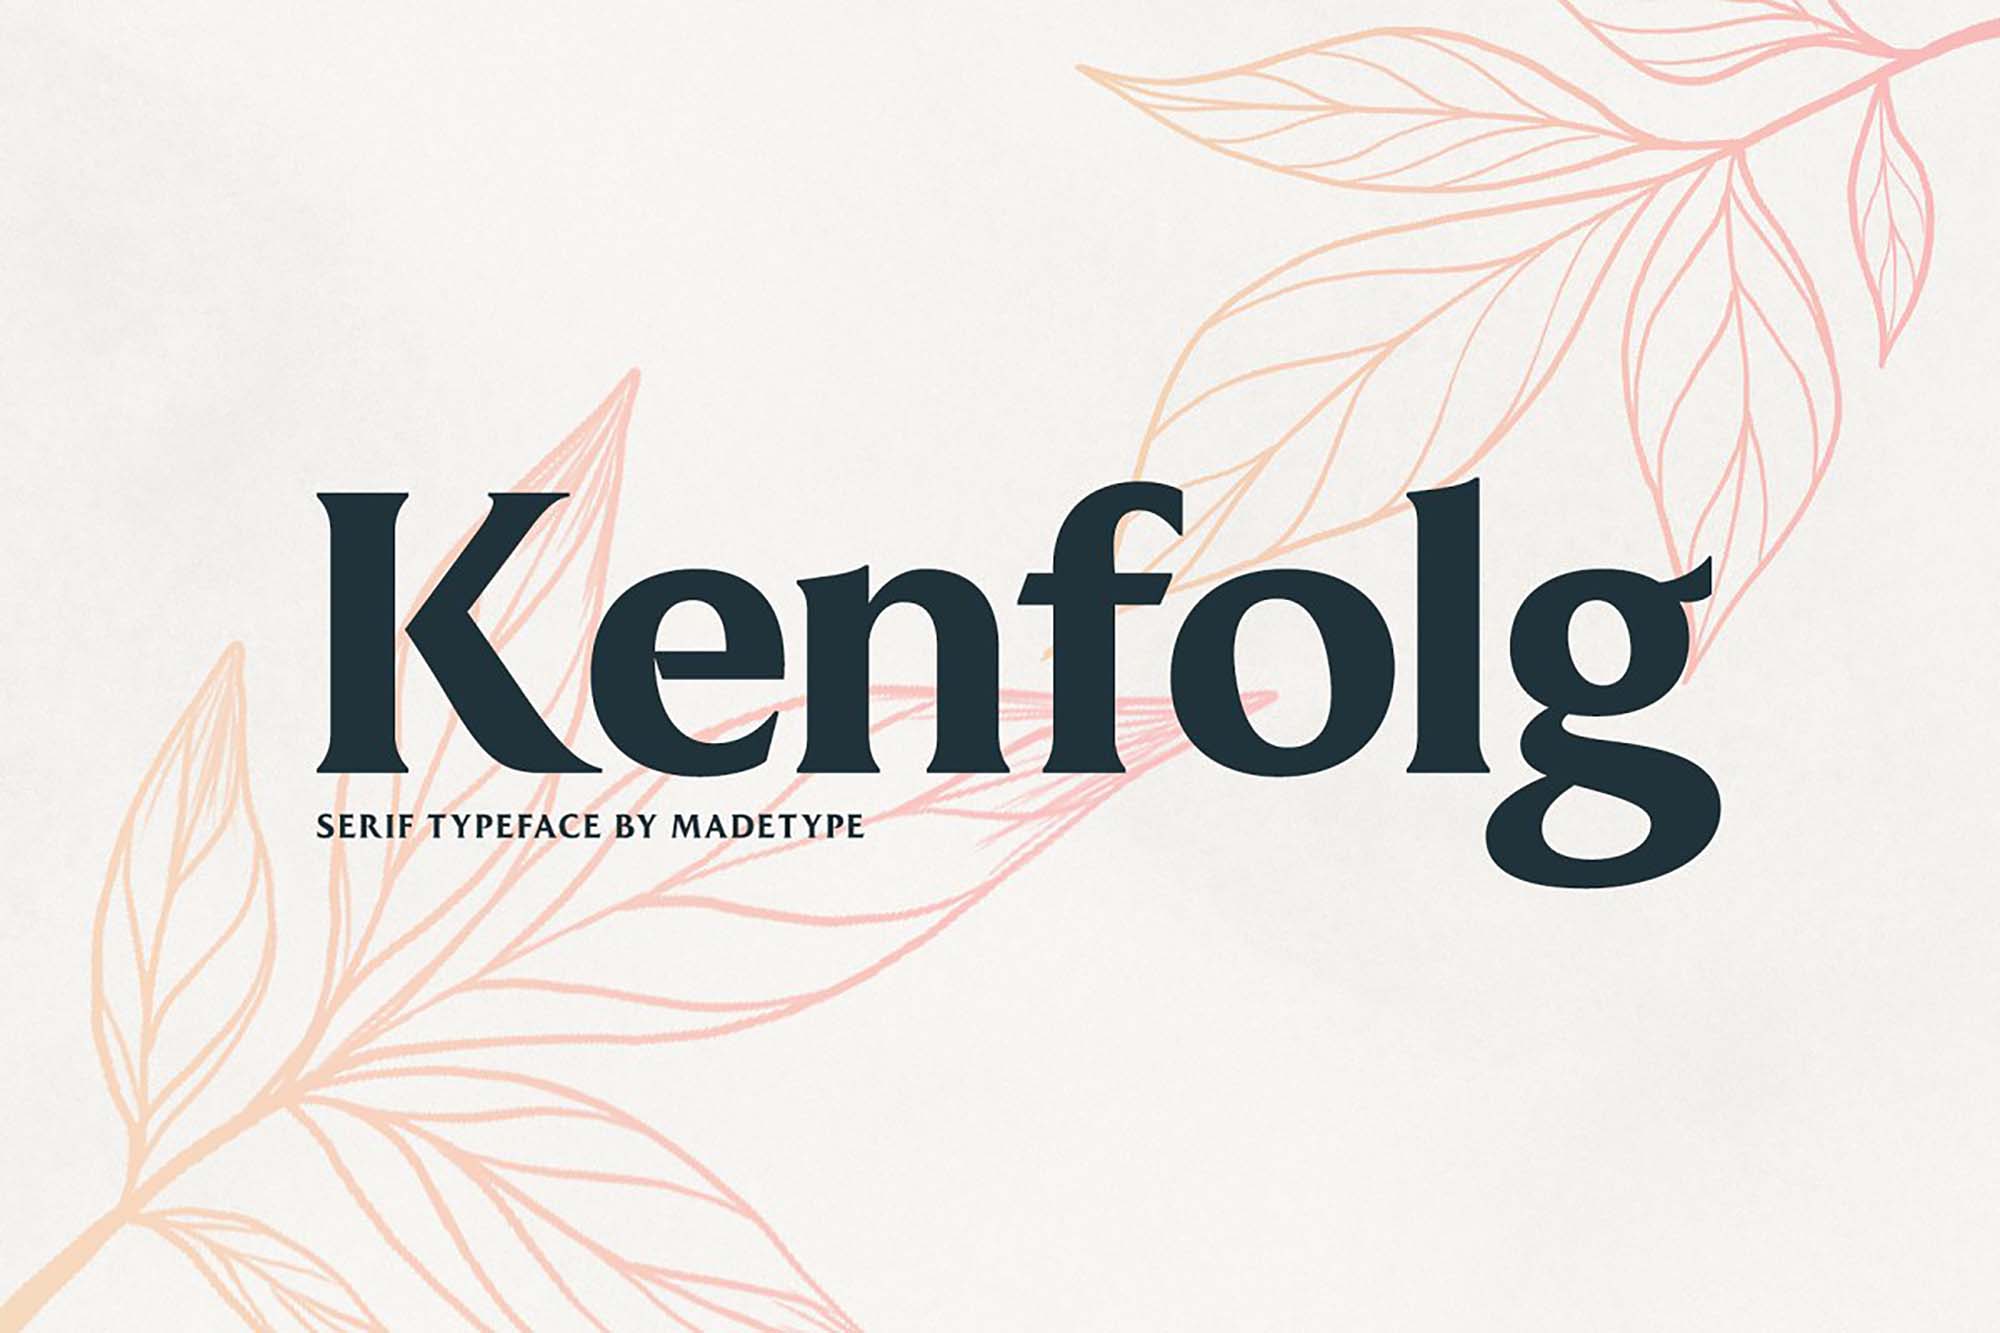 A free elegant serif font